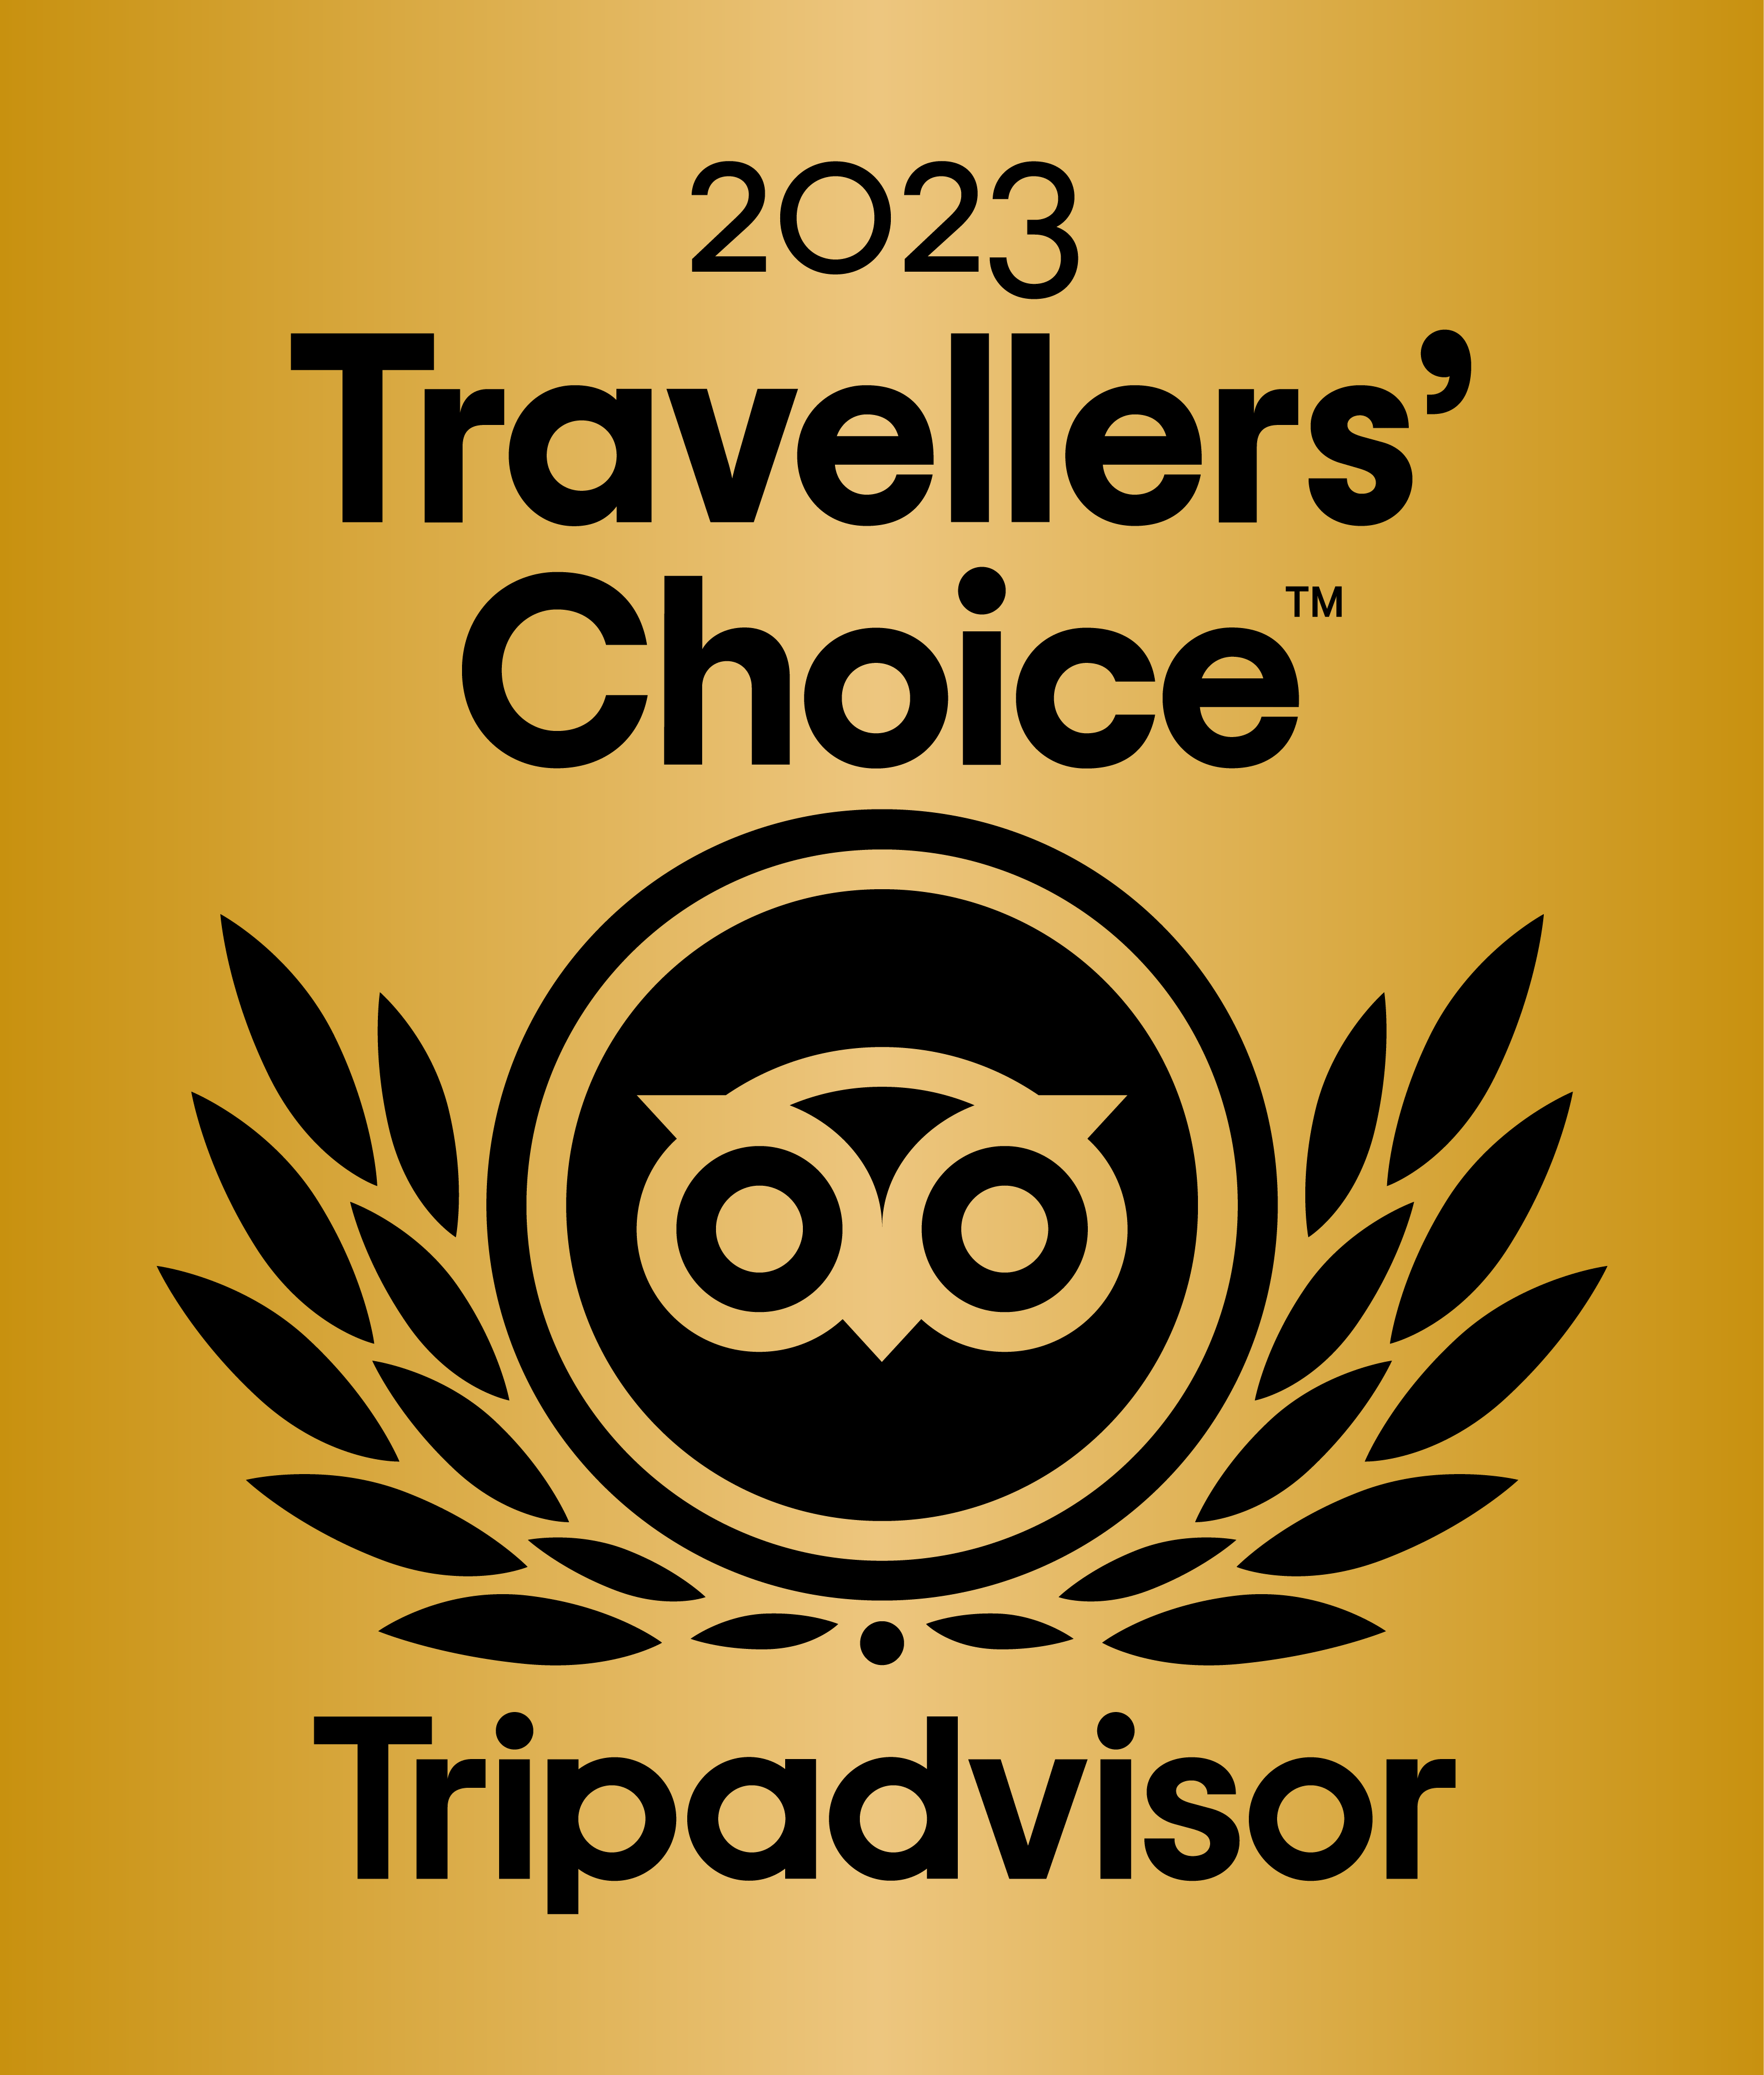 Tripadvisor 2023 Travel Choice Gold Logo